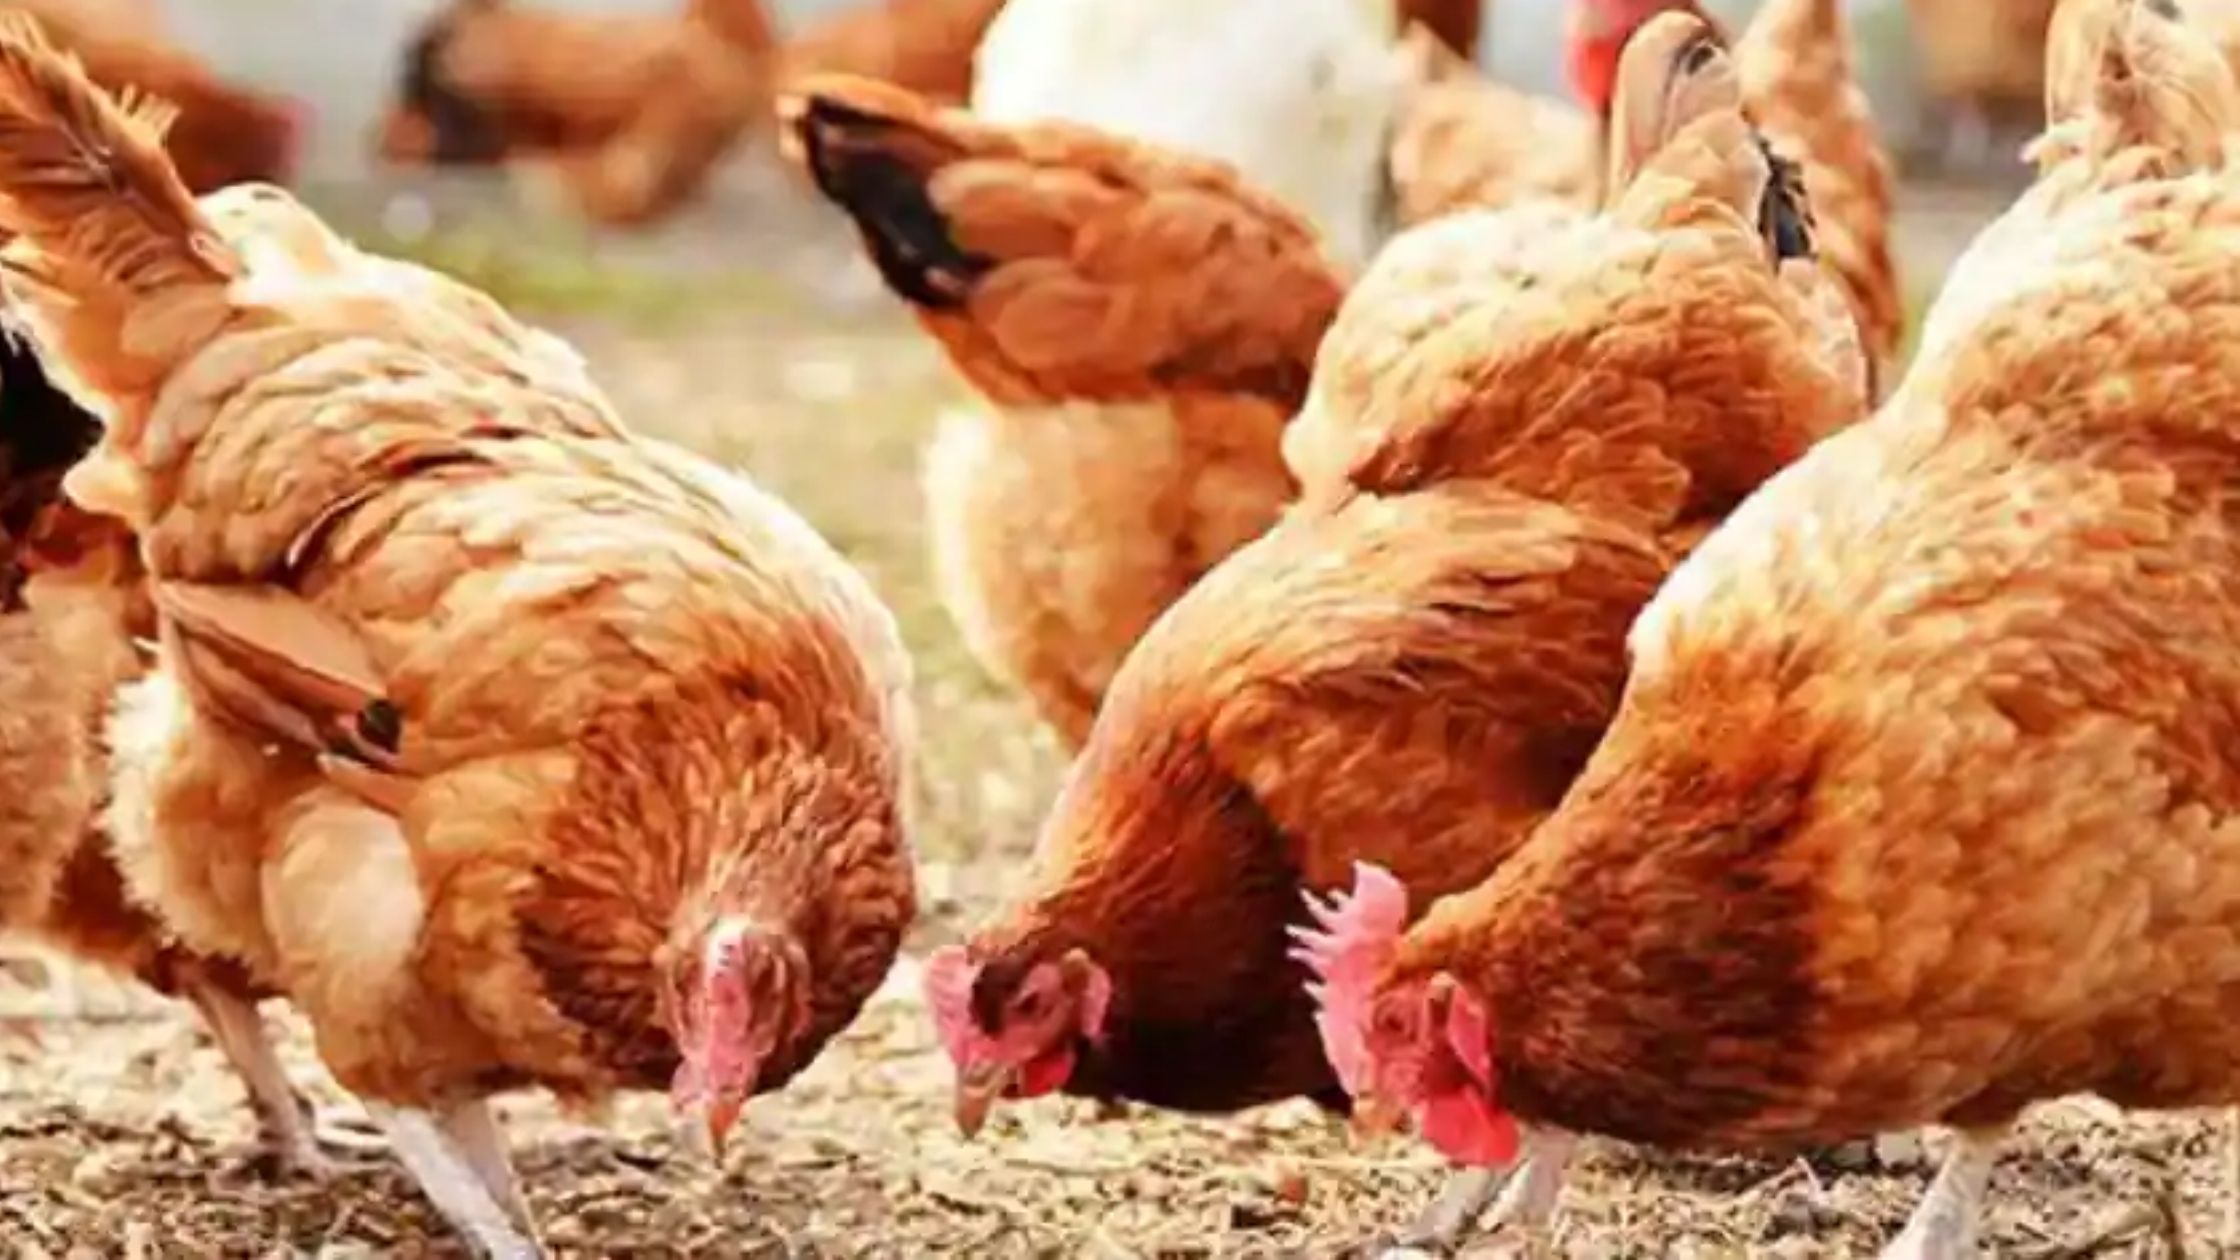 मुर्गी पालन कैसे करें? भारत में मुर्गियों की लोकप्रिय 5 नस्लें, यहां जानें